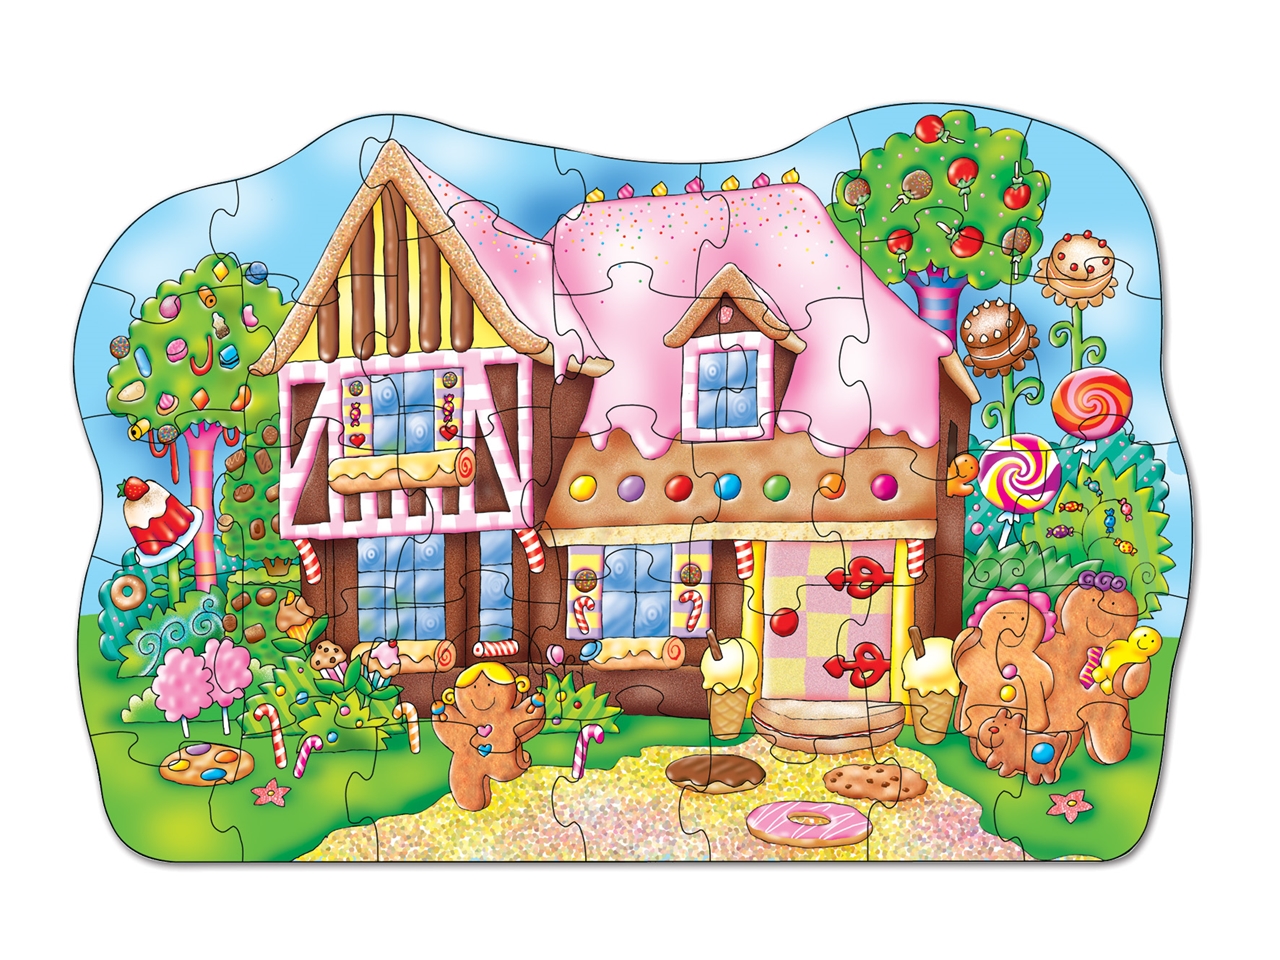 Gingerbread house, Floor puzzle. Puzzle de podea, Casuta de turta dulce